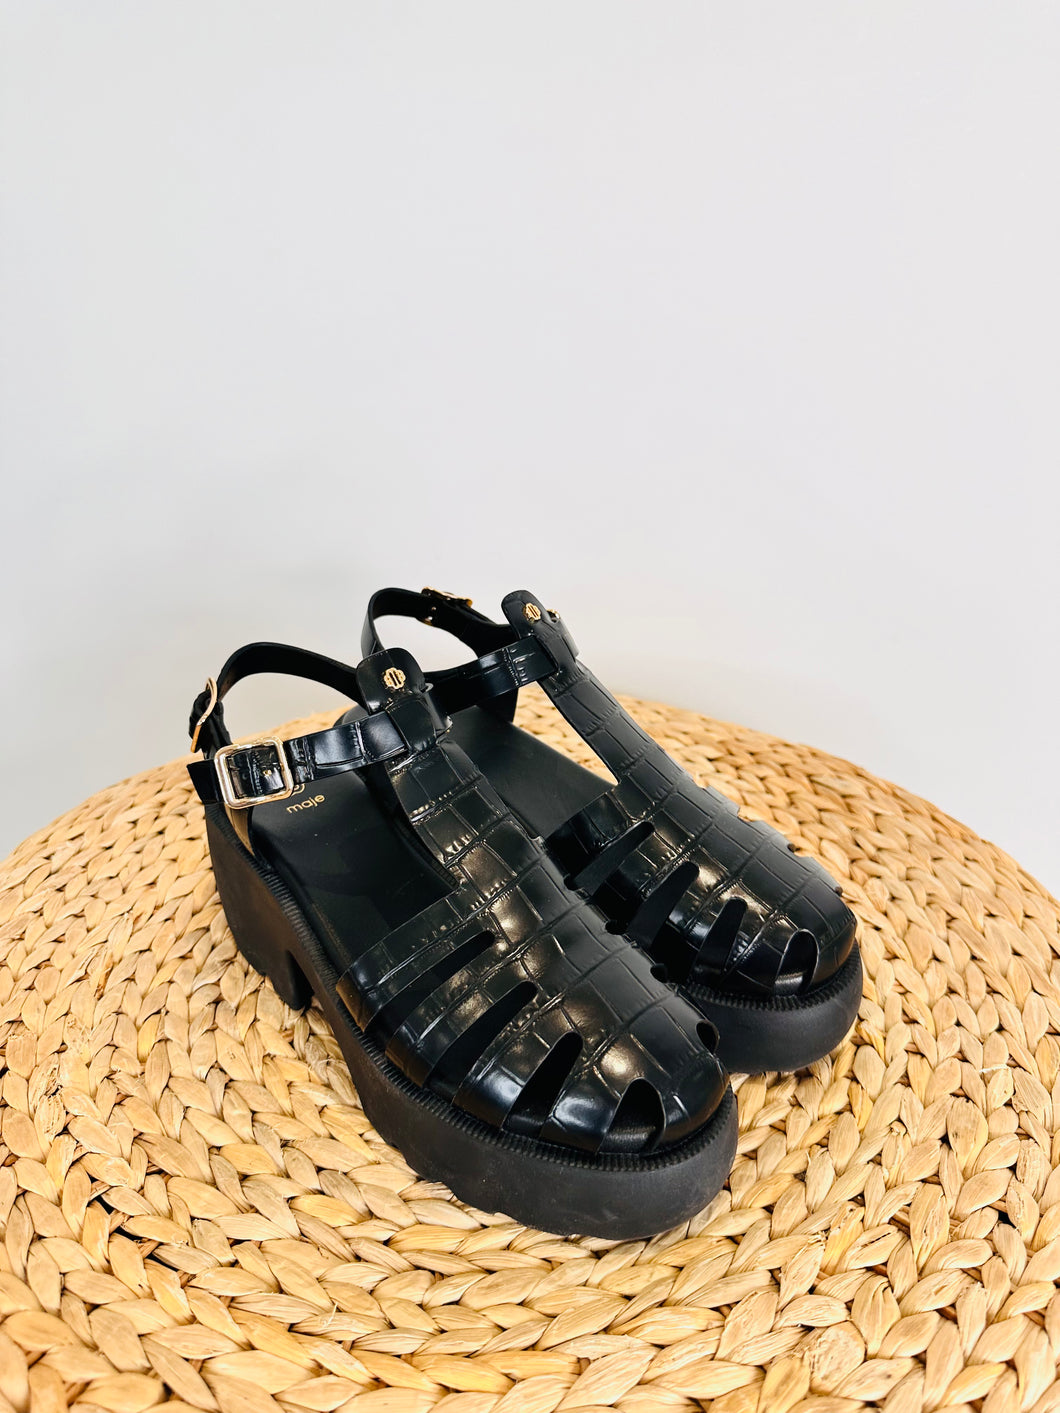 Moc Croc Sandals - Size 39